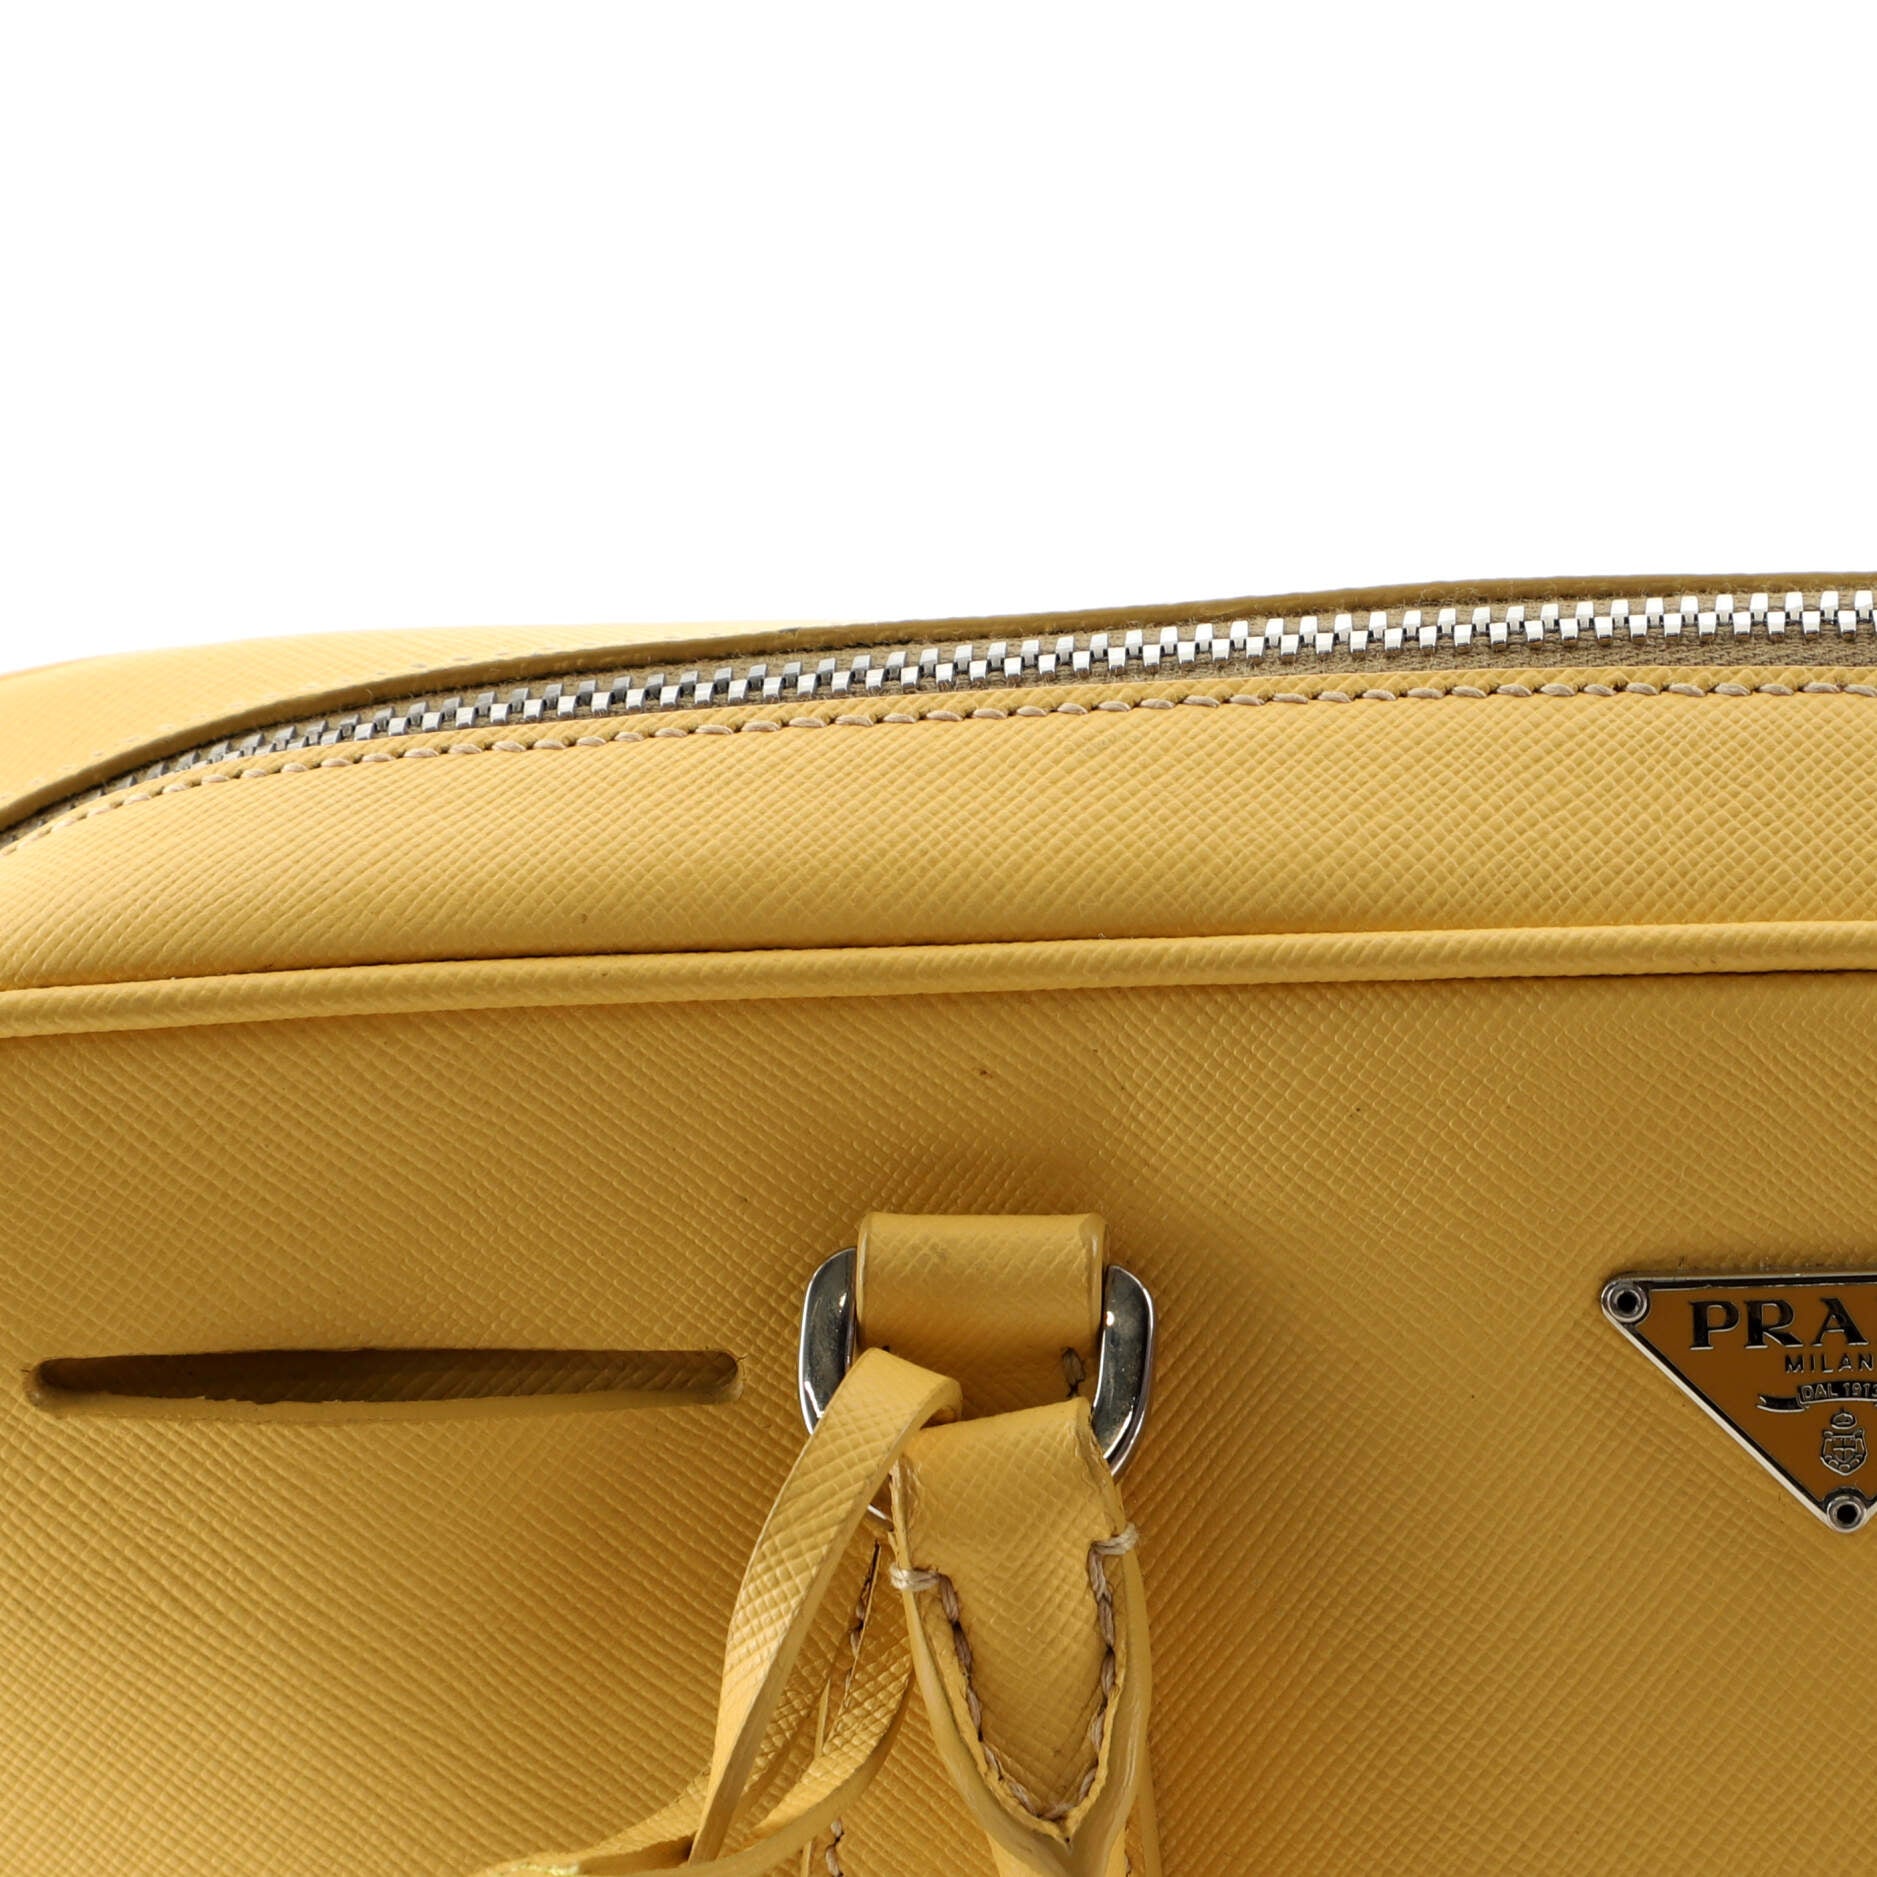 Prada Perforated Shoulder bag lock and keys